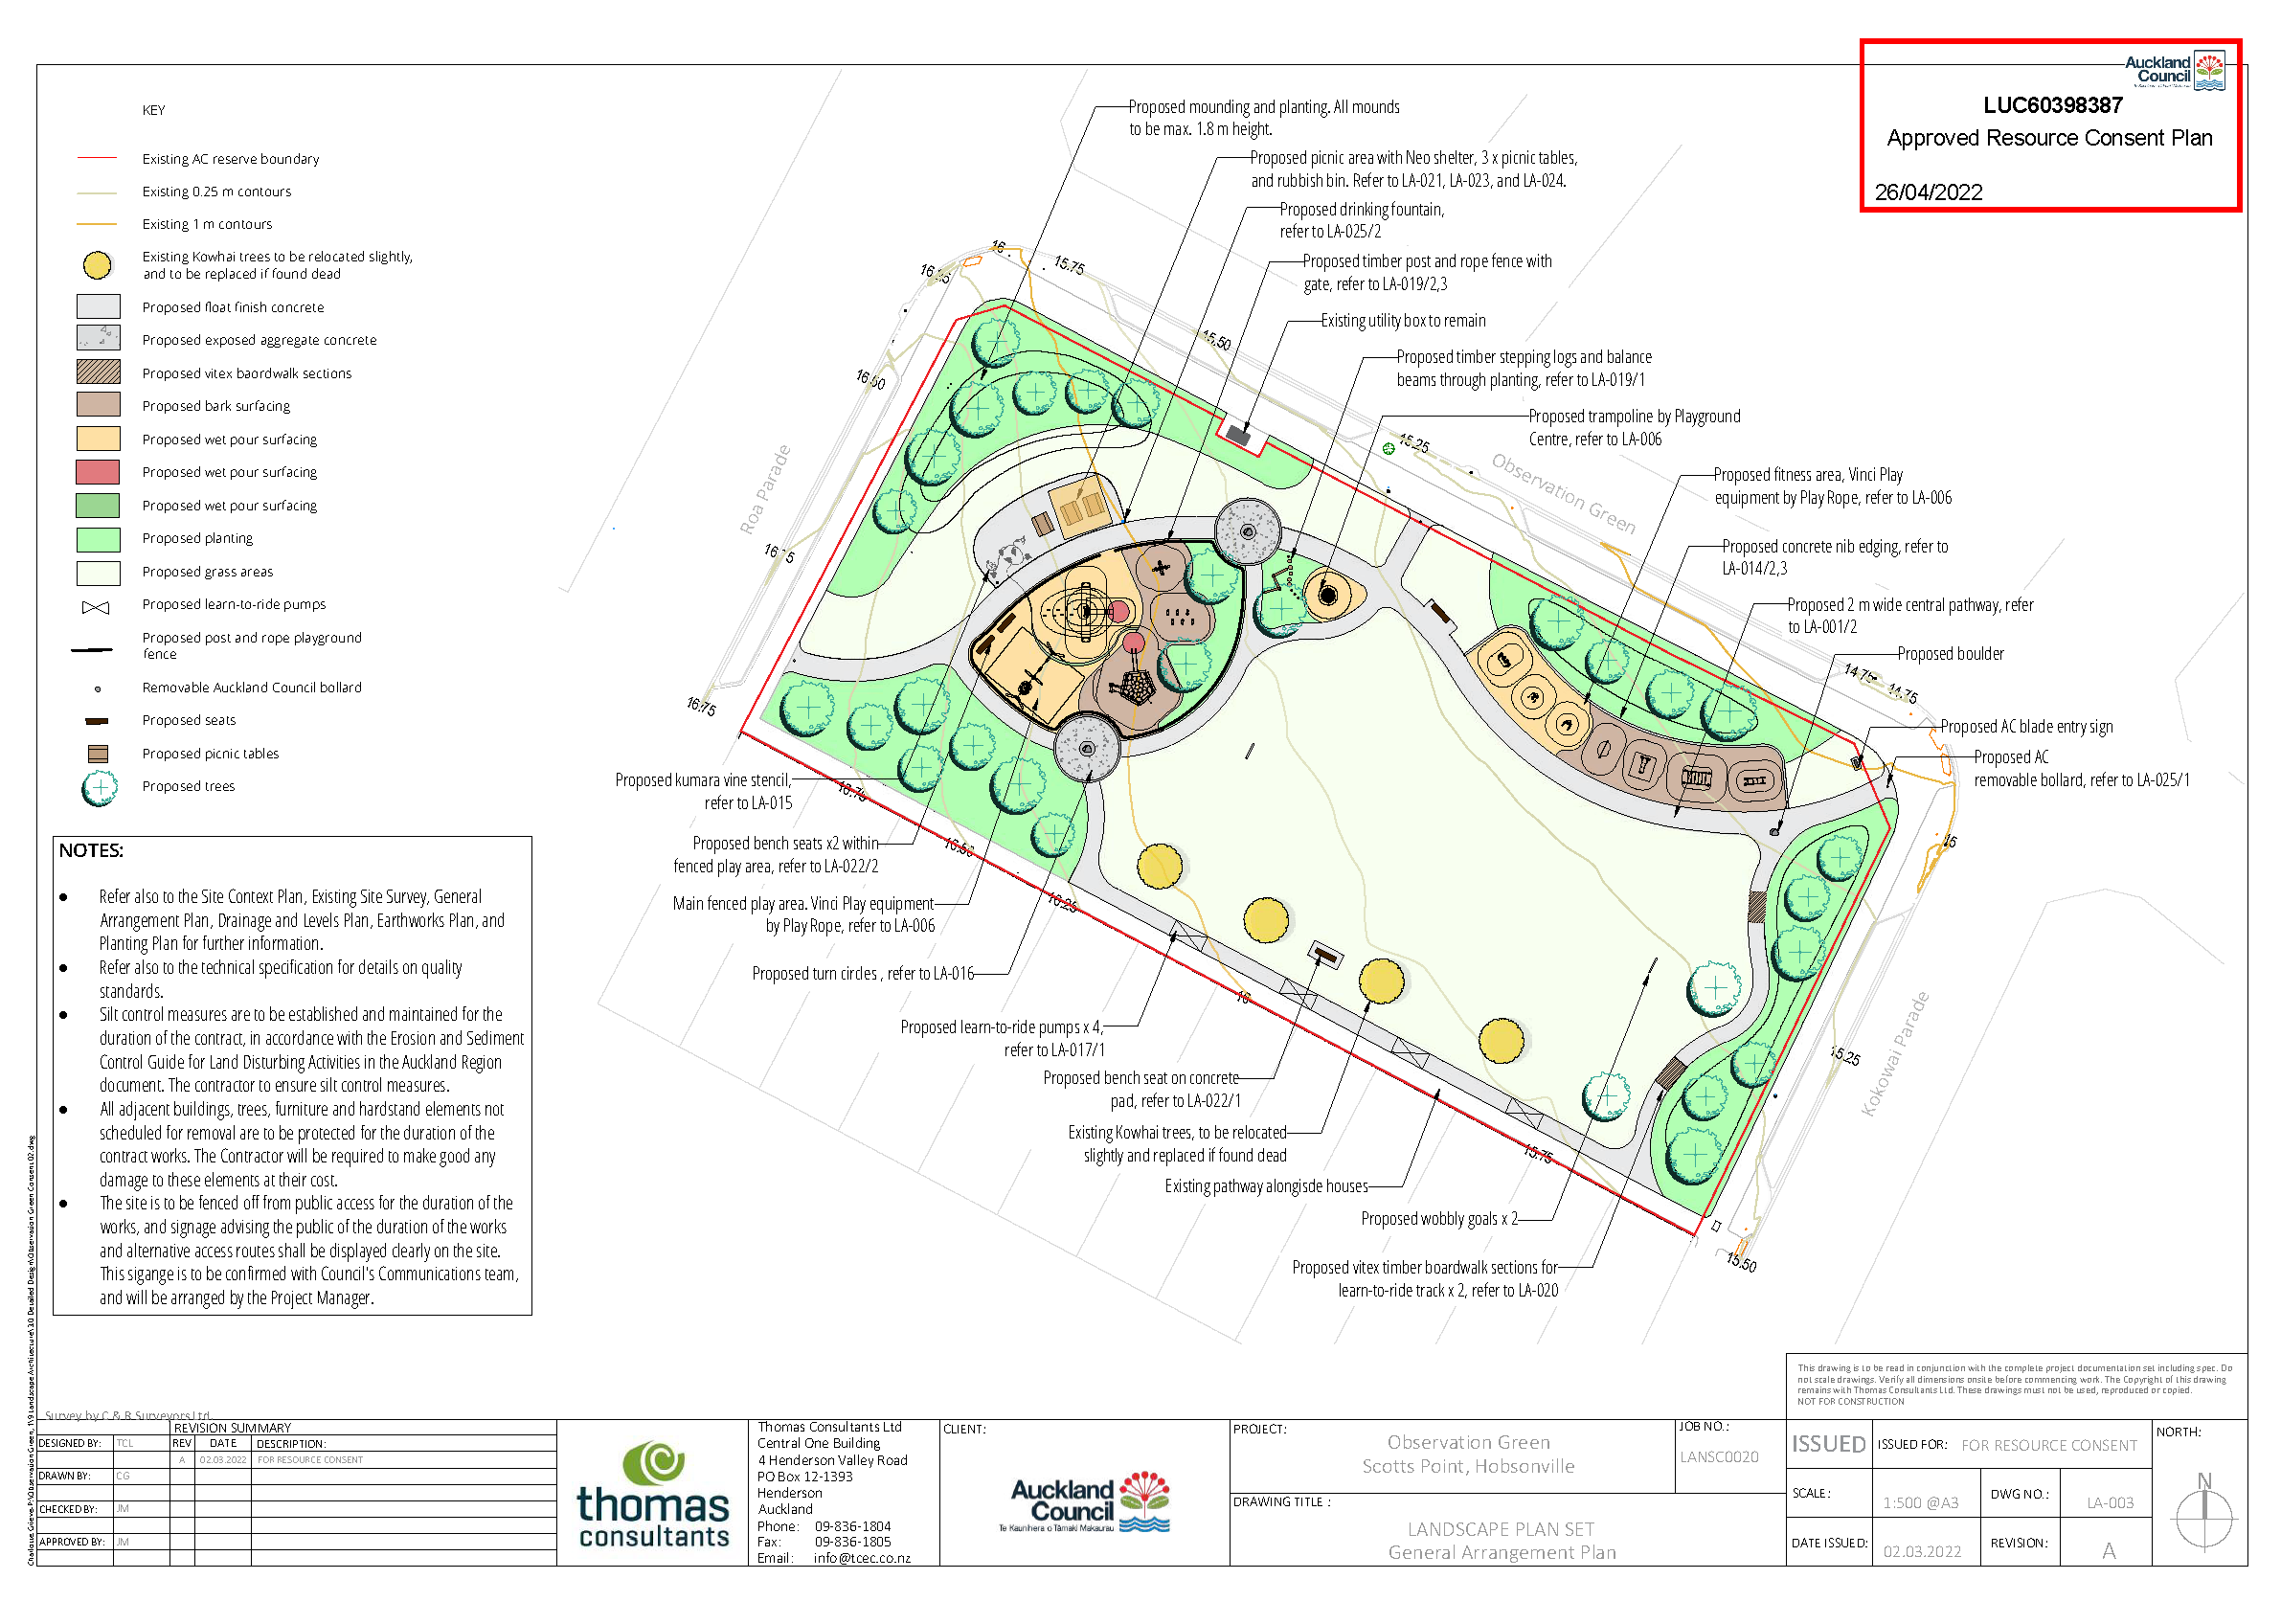 Landscape Design concept plan by Thomas Consultants Ltd Landscape Architecture team